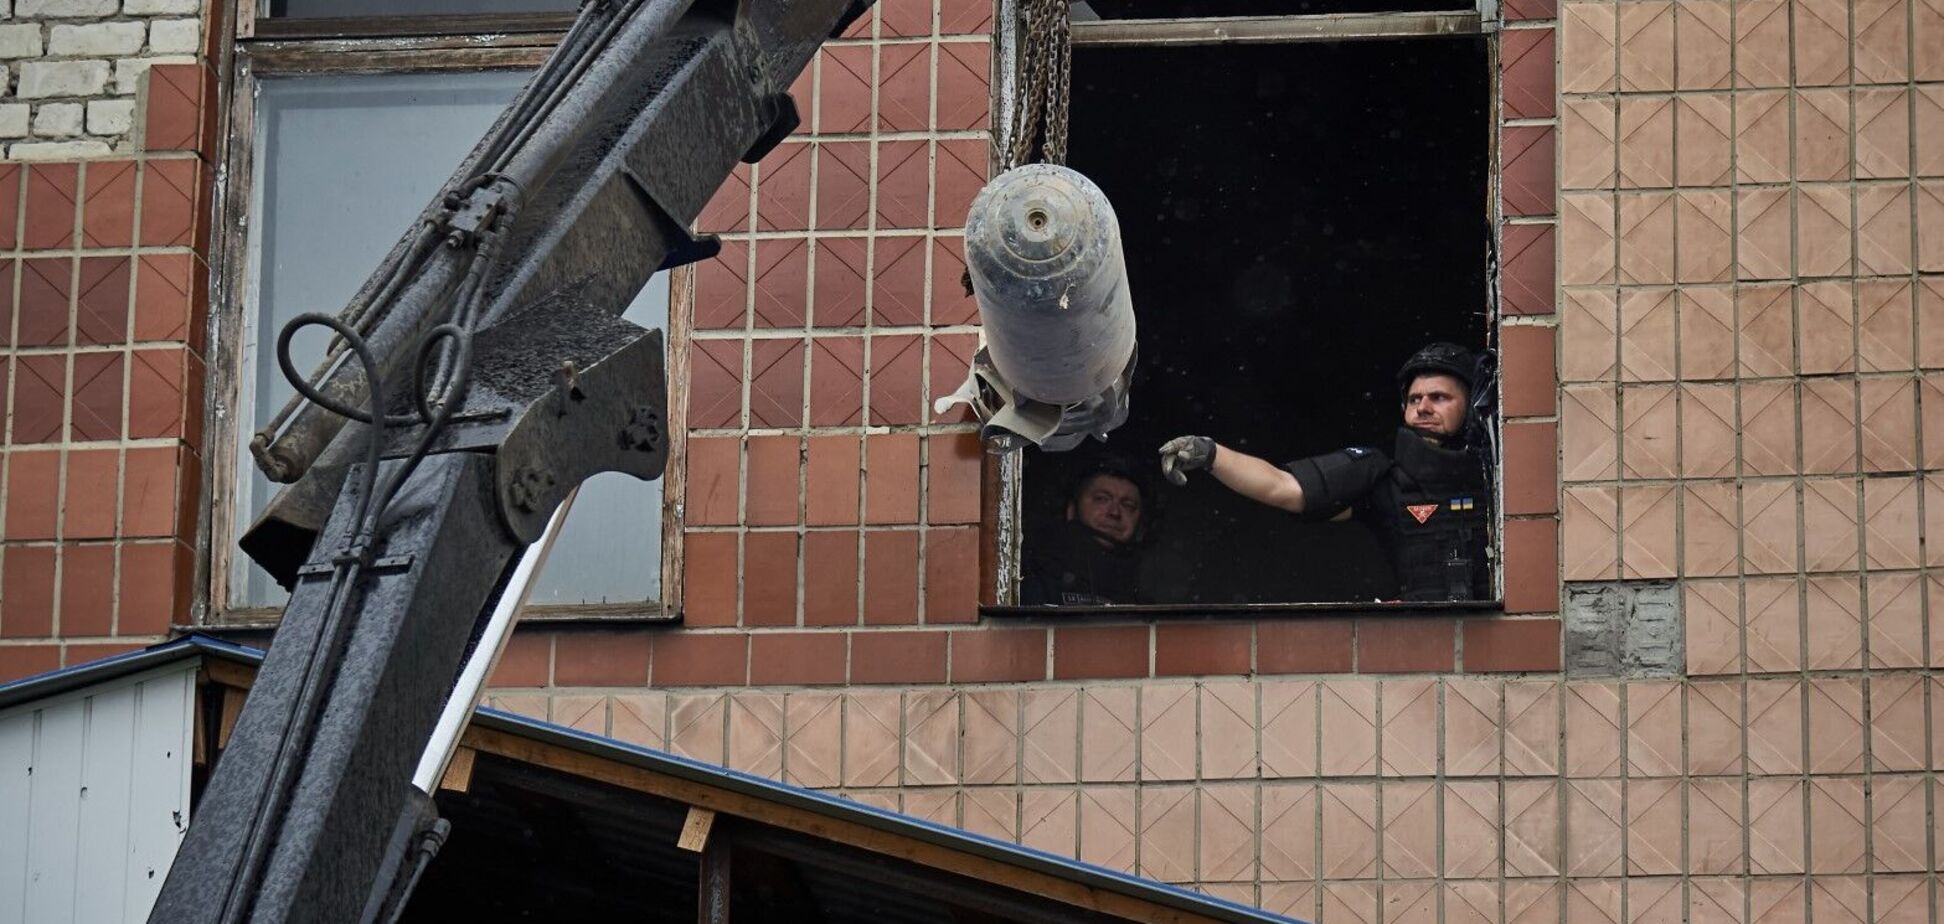 Попала в гражданское помещение, но не сдетонировала: на Харьковщине обезвредили 250-килограммовую управляемую авиабомбу. Видео